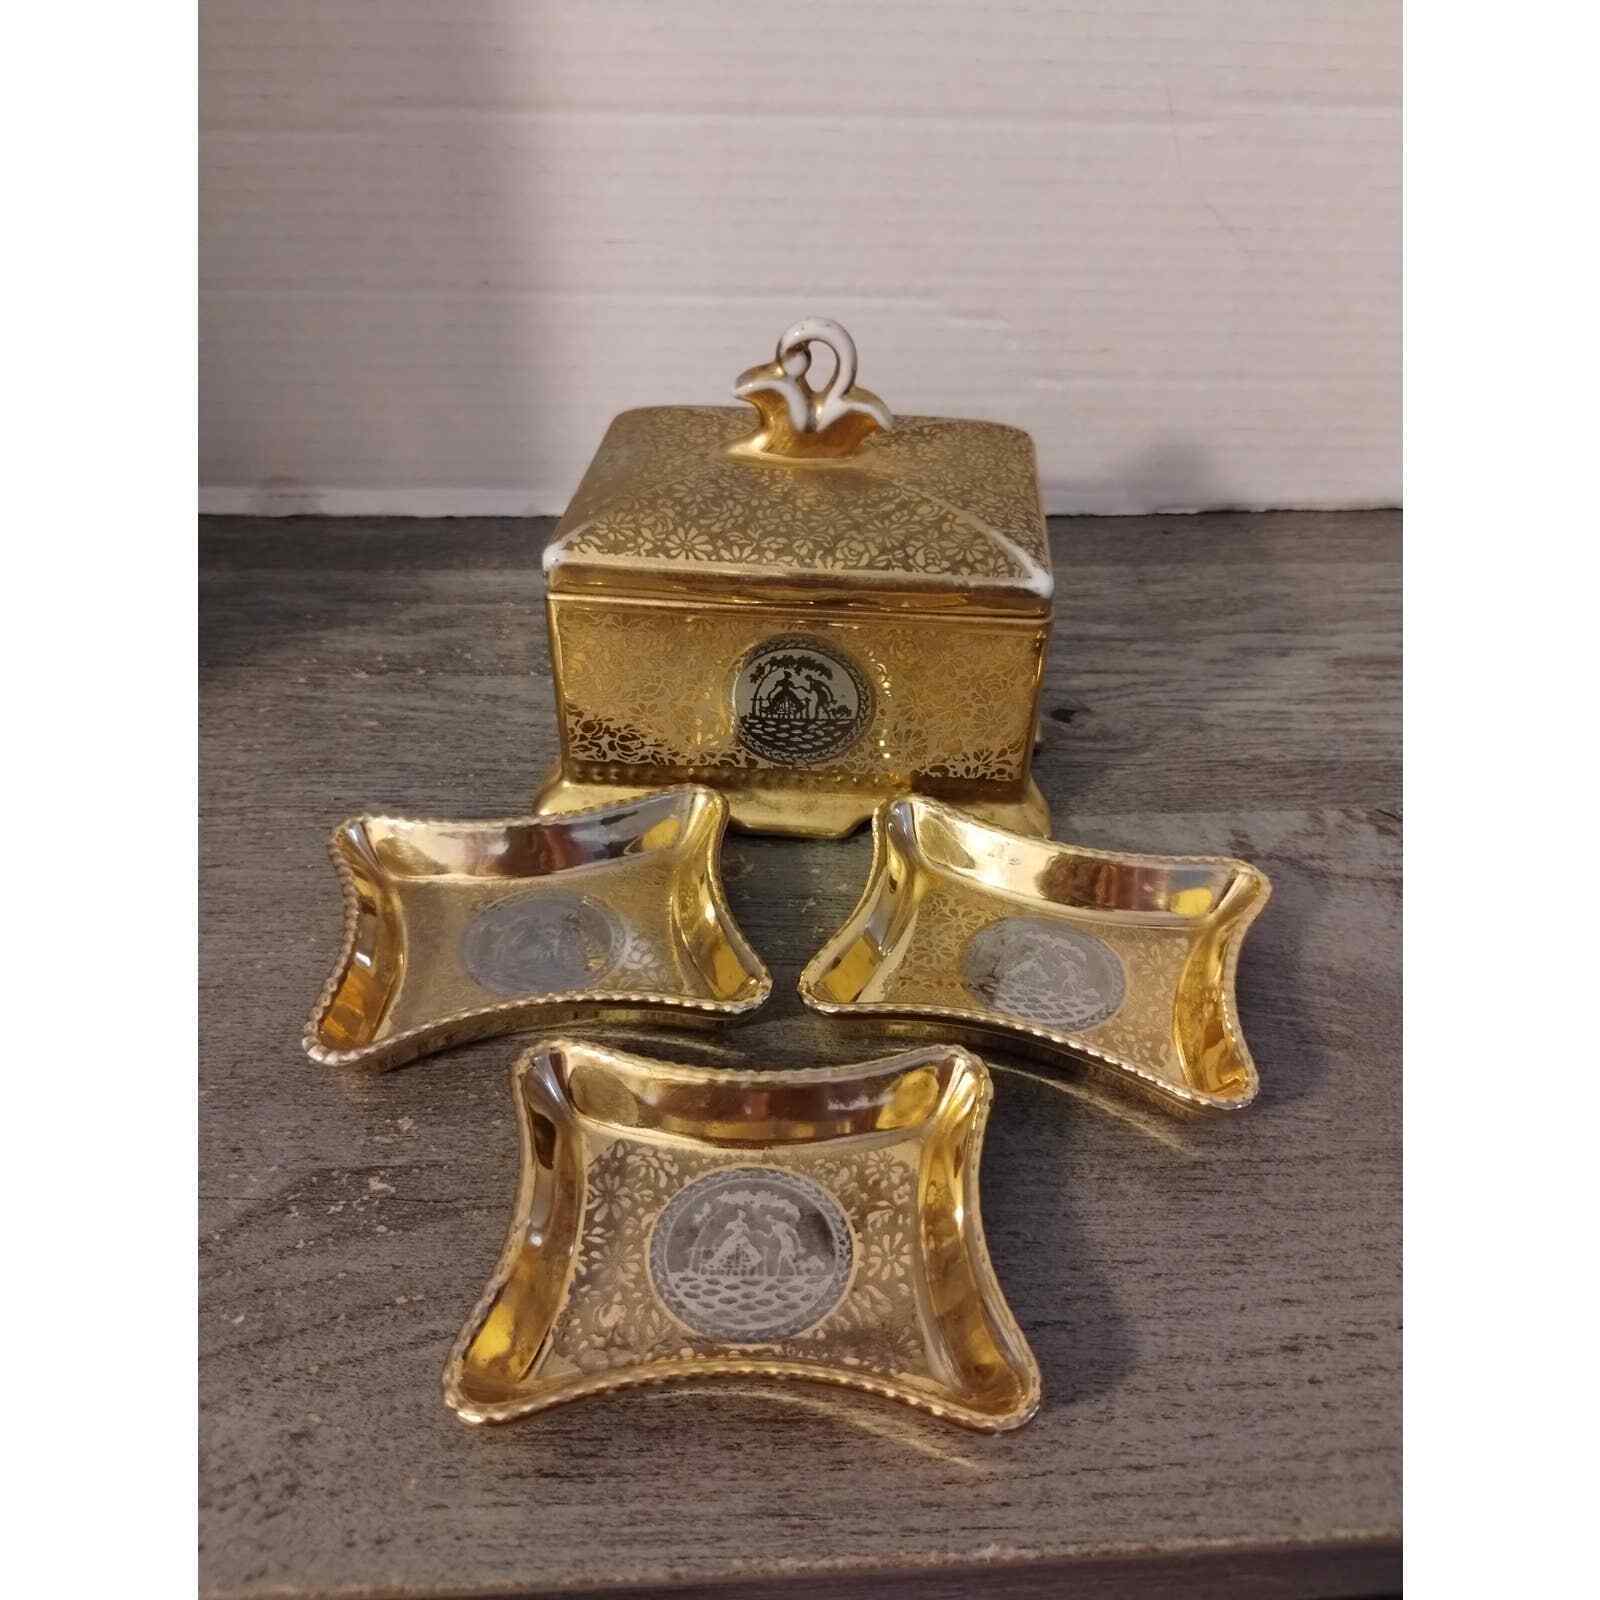 Antique Le Mieux 24 KT Gold & Platinum Hand Decorated Cigarette Box + 3 Ashtrays